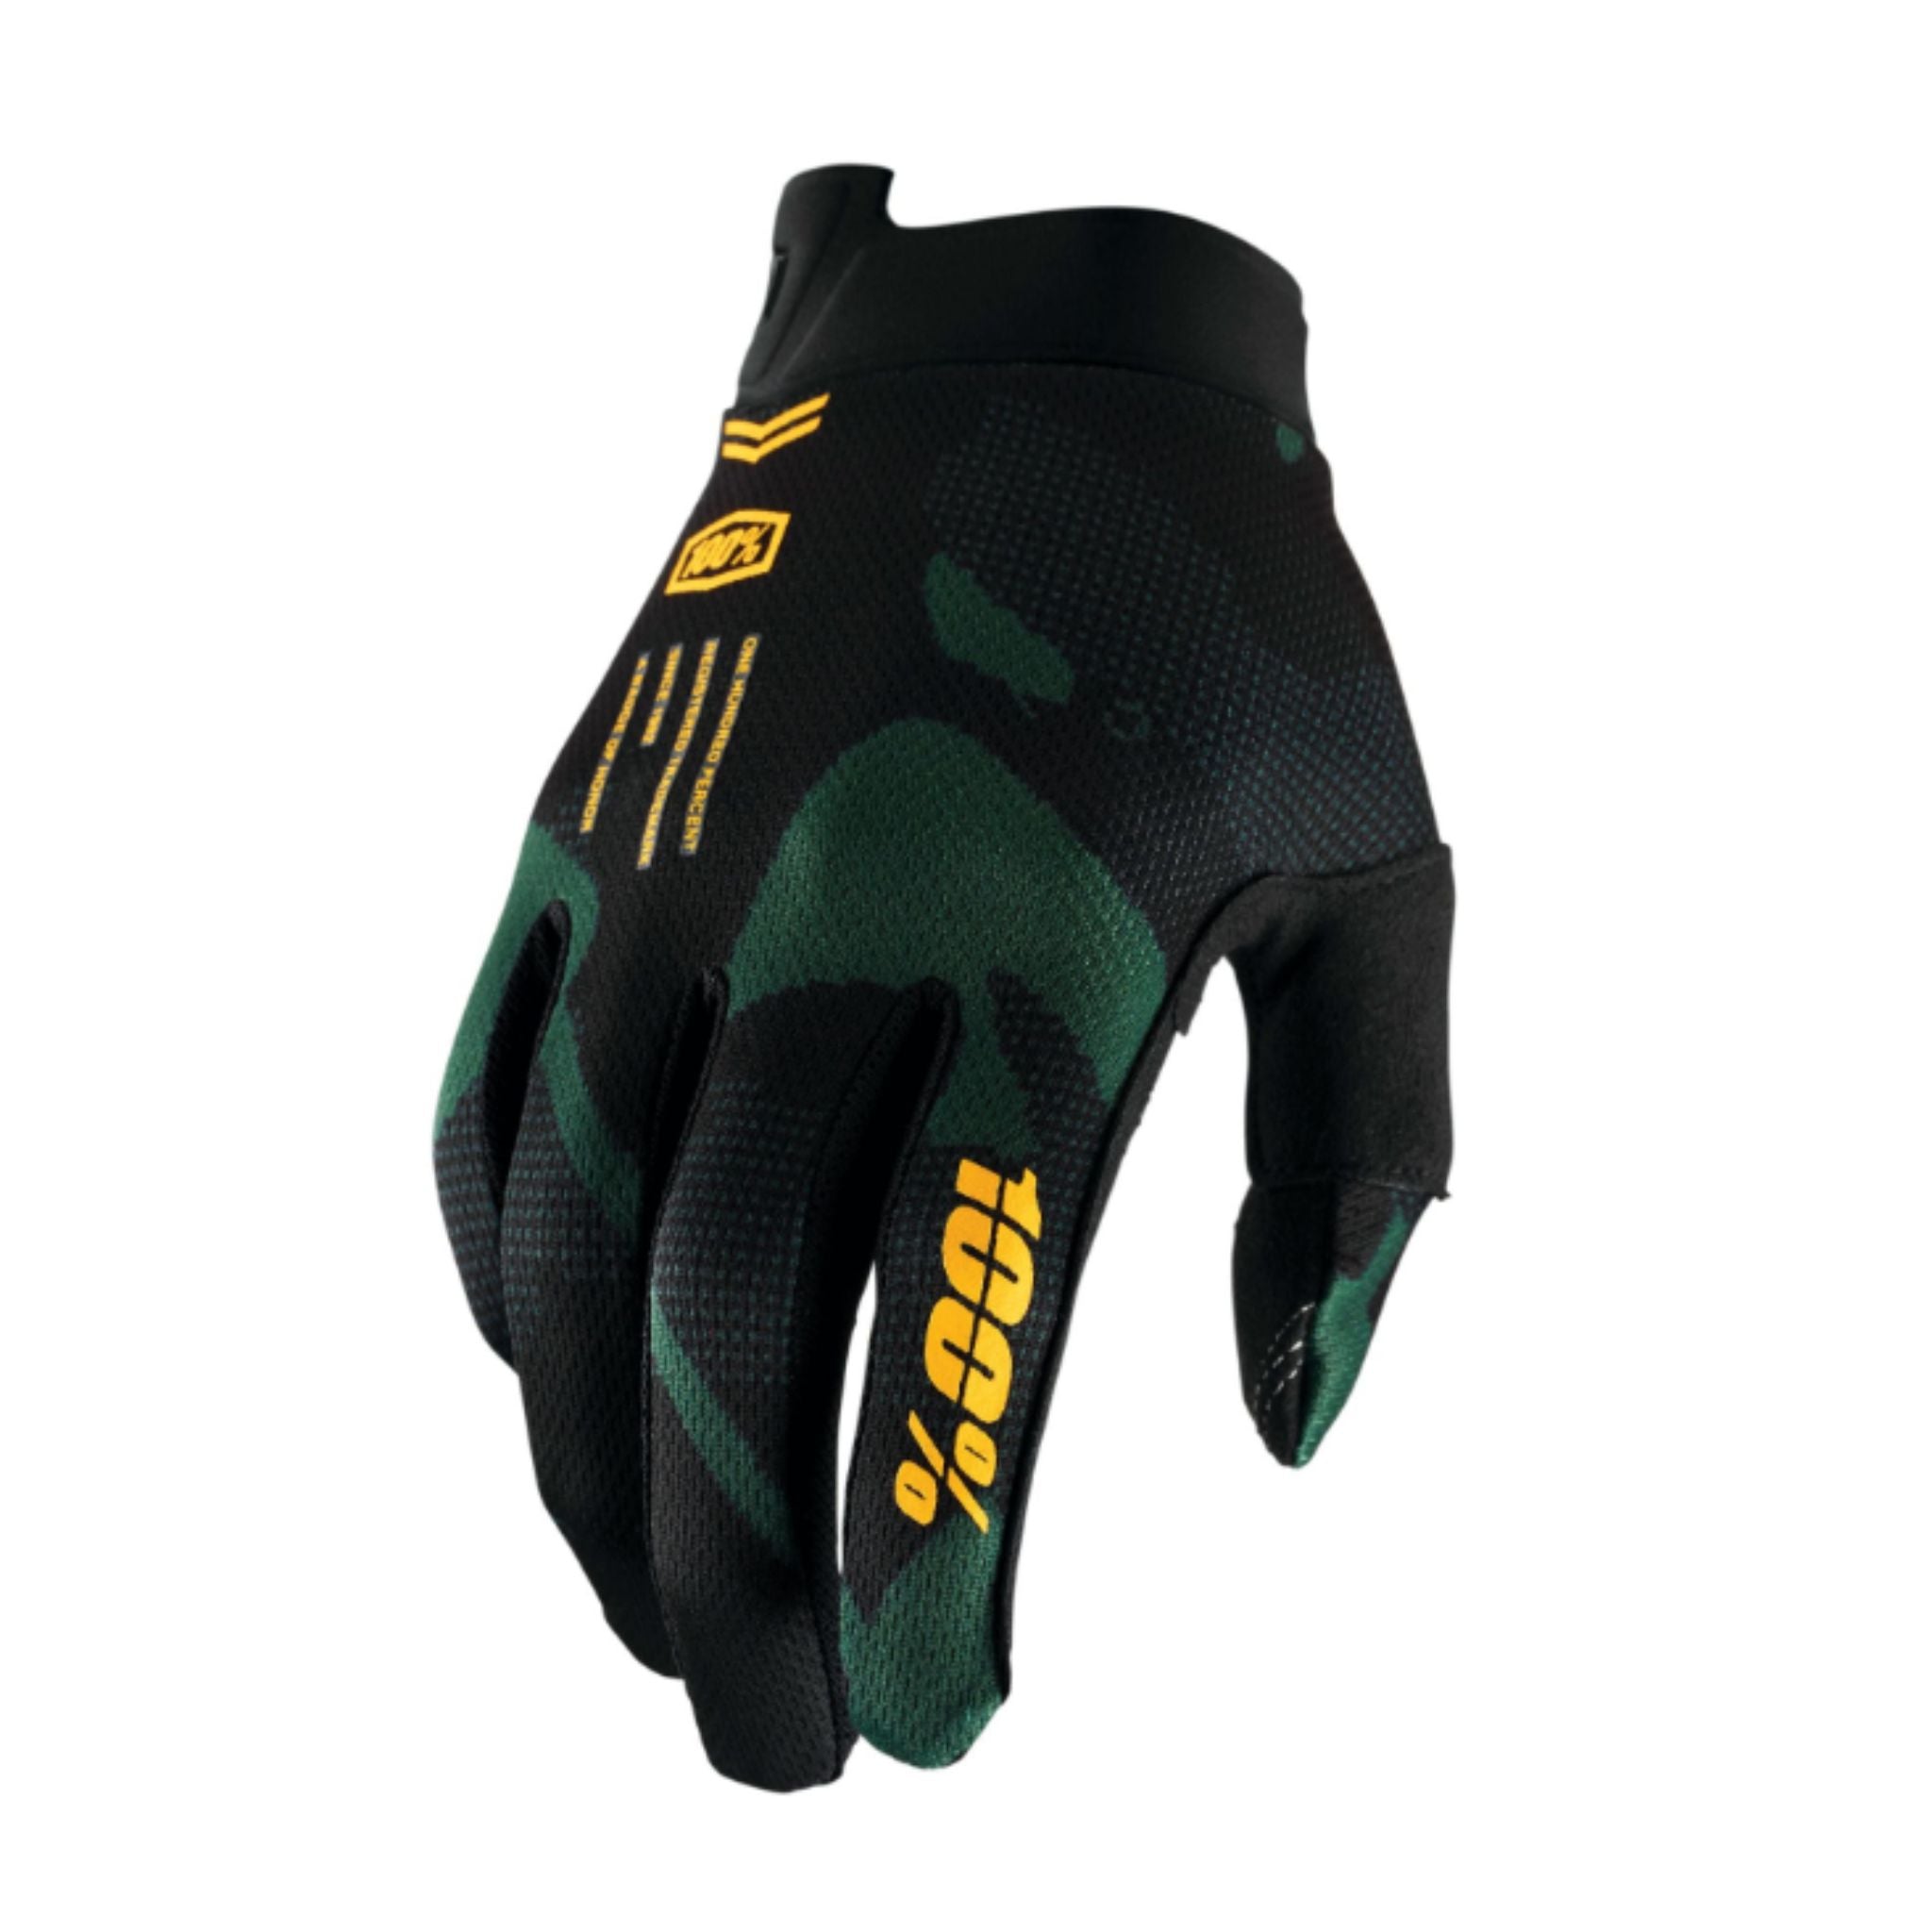 100% iTrack Gloves